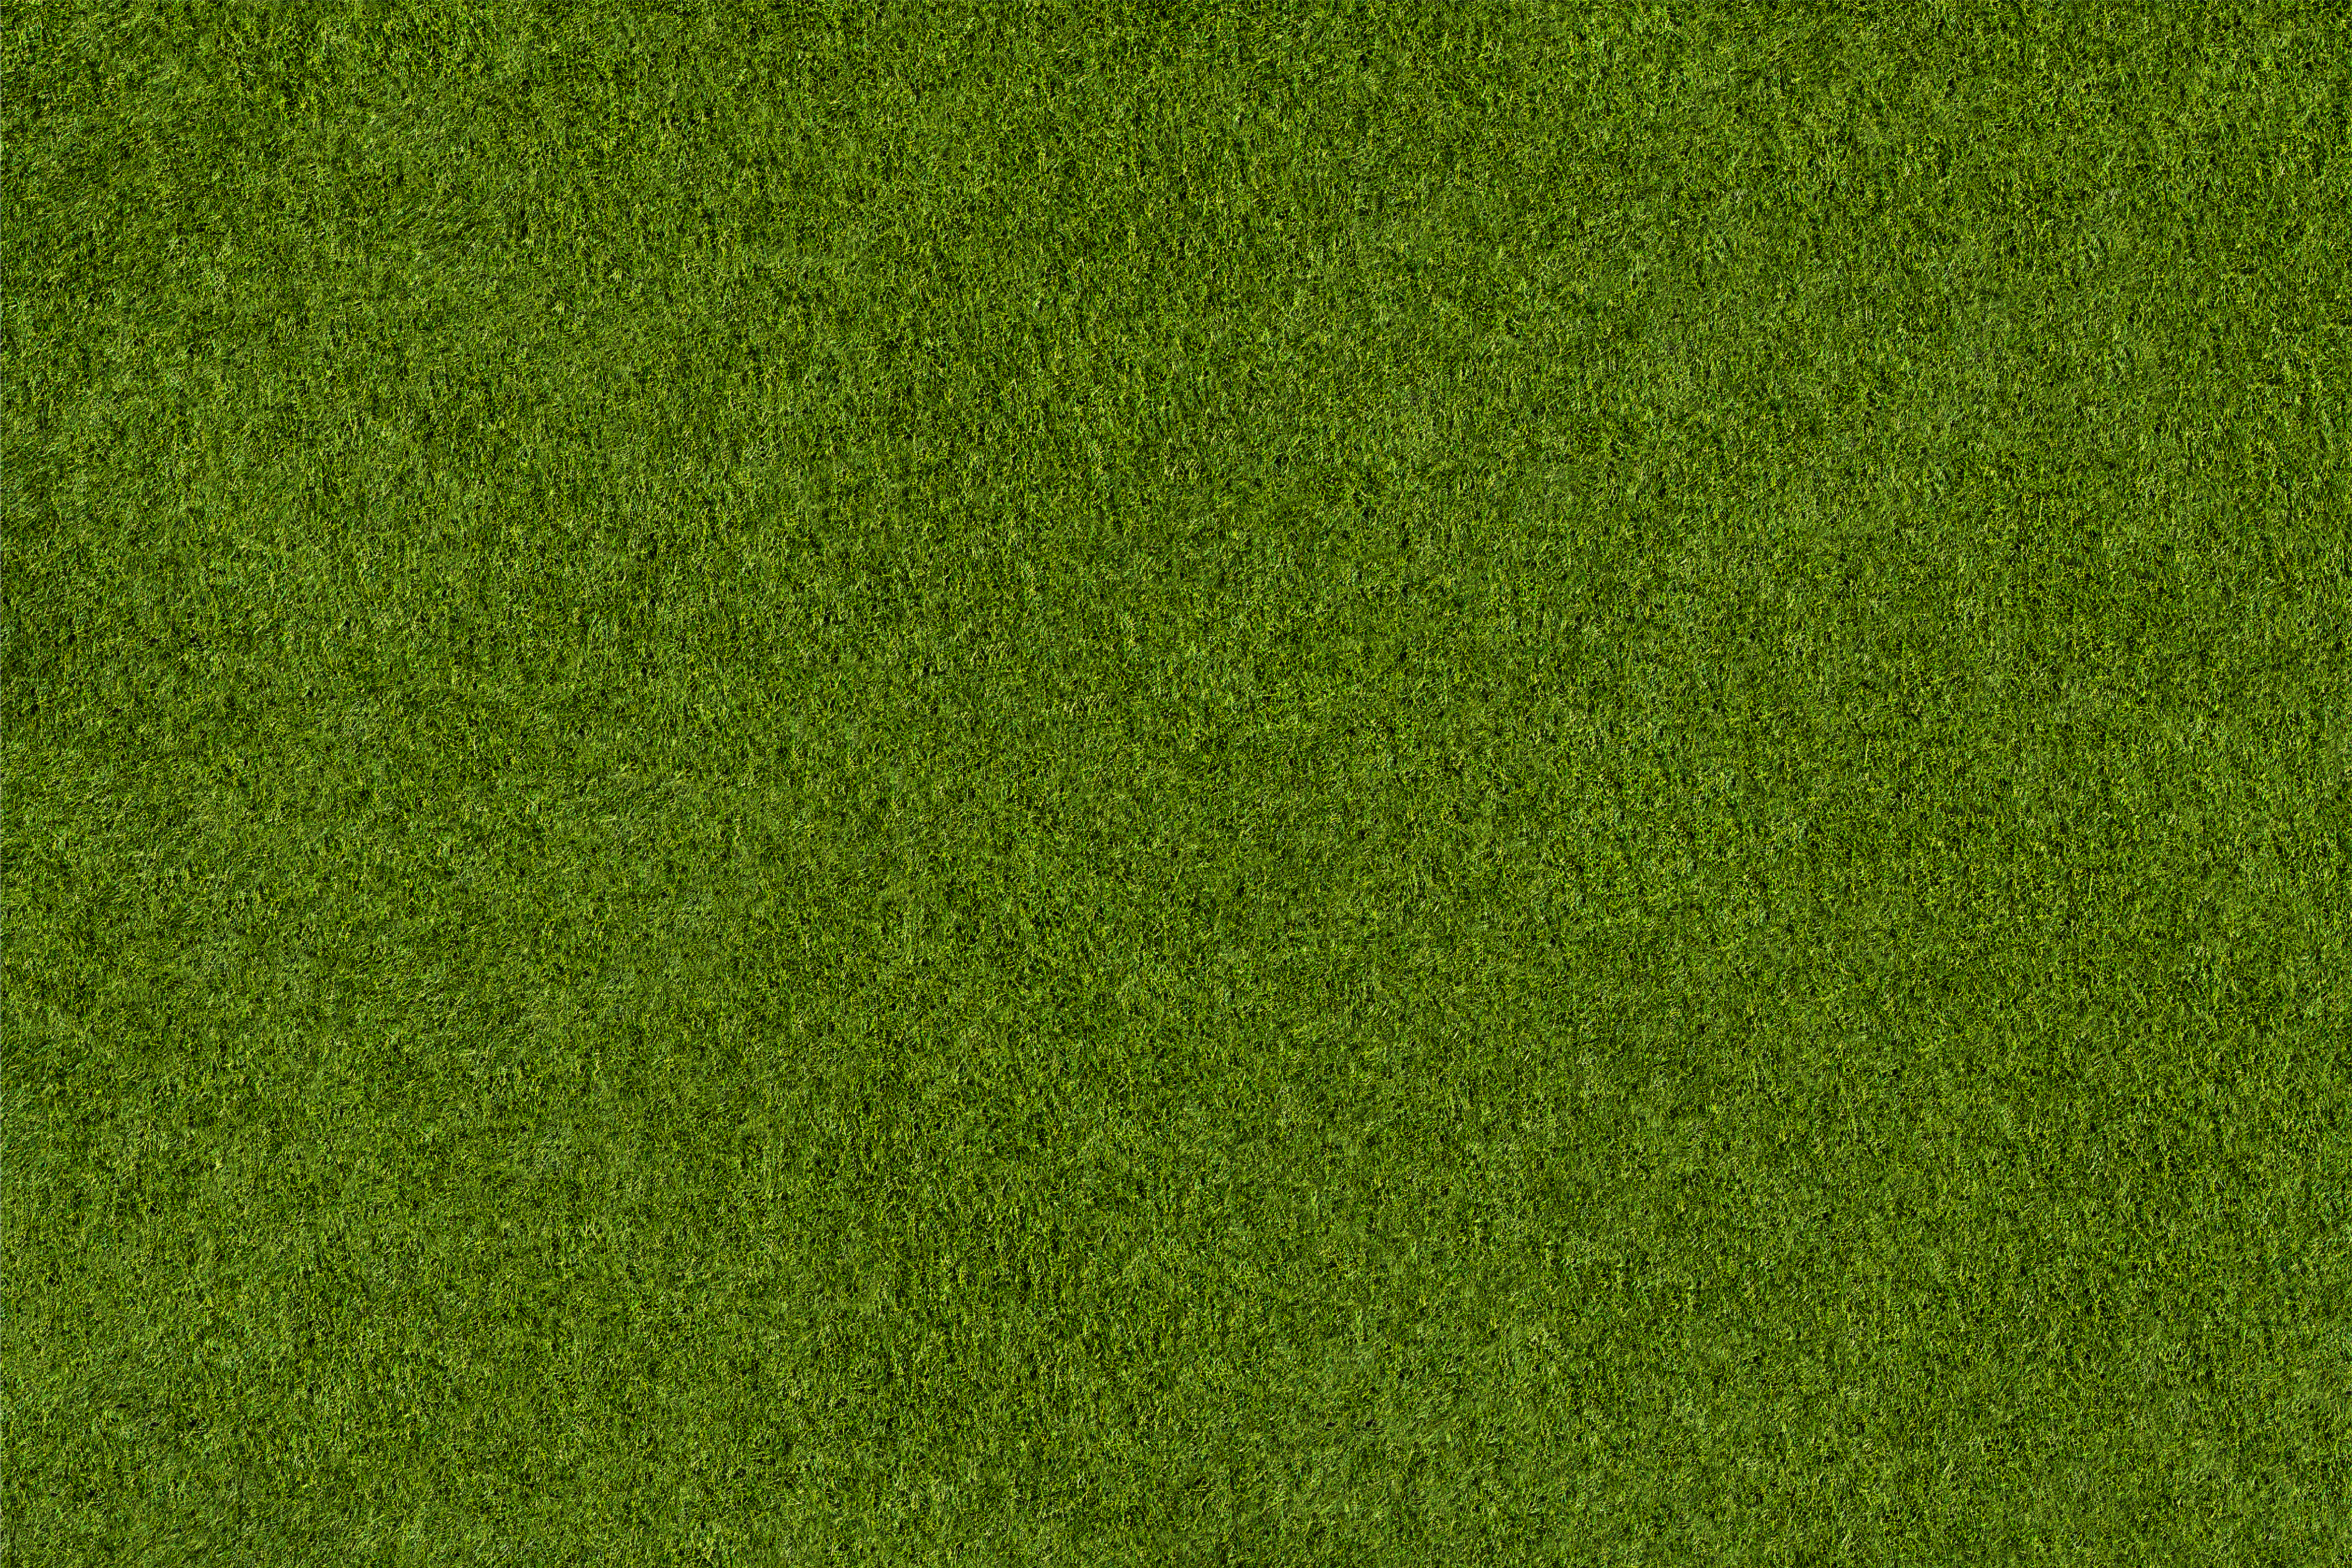 golf 2021 Grass Background - Greener